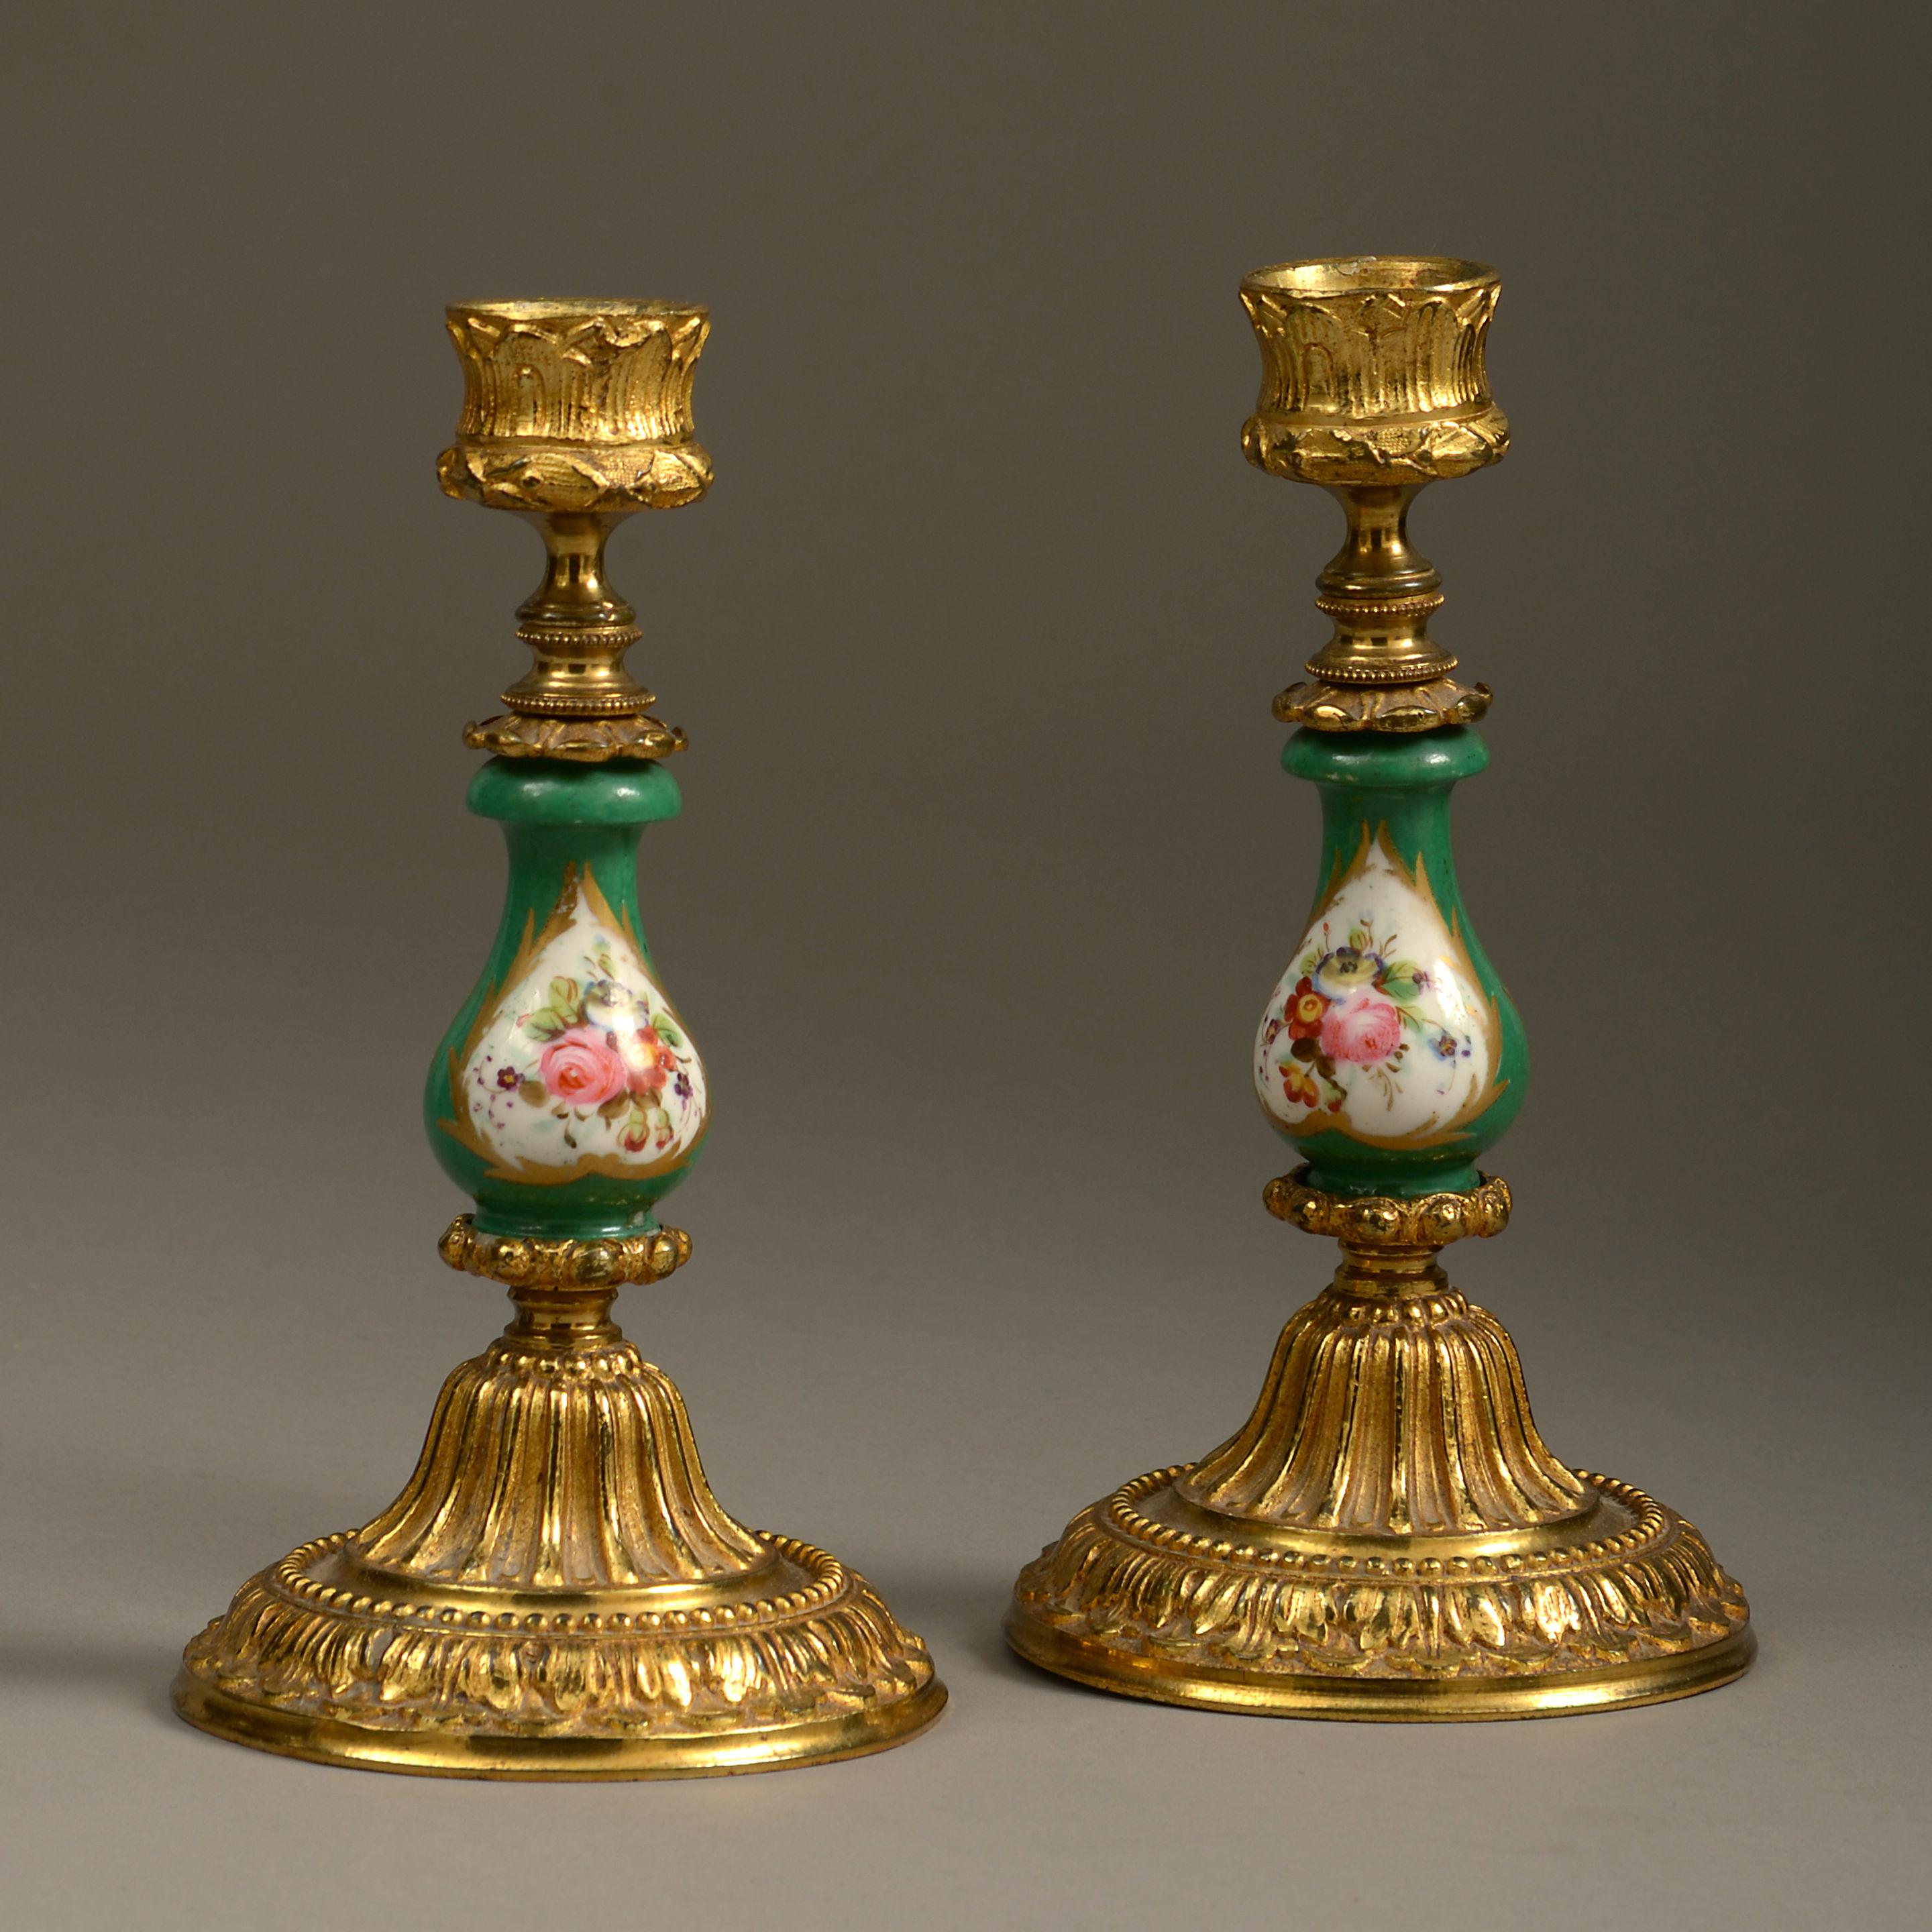 Ein Paar Kerzenständer aus der Mitte des 19. Jahrhunderts mit Sockeln und Sockeln aus Ormolu im Stil Ludwigs XVI., die Stiele aus Sèvres-Porzellan mit Blumenkartuschen auf grünem Grund im Stil des Rokoko.